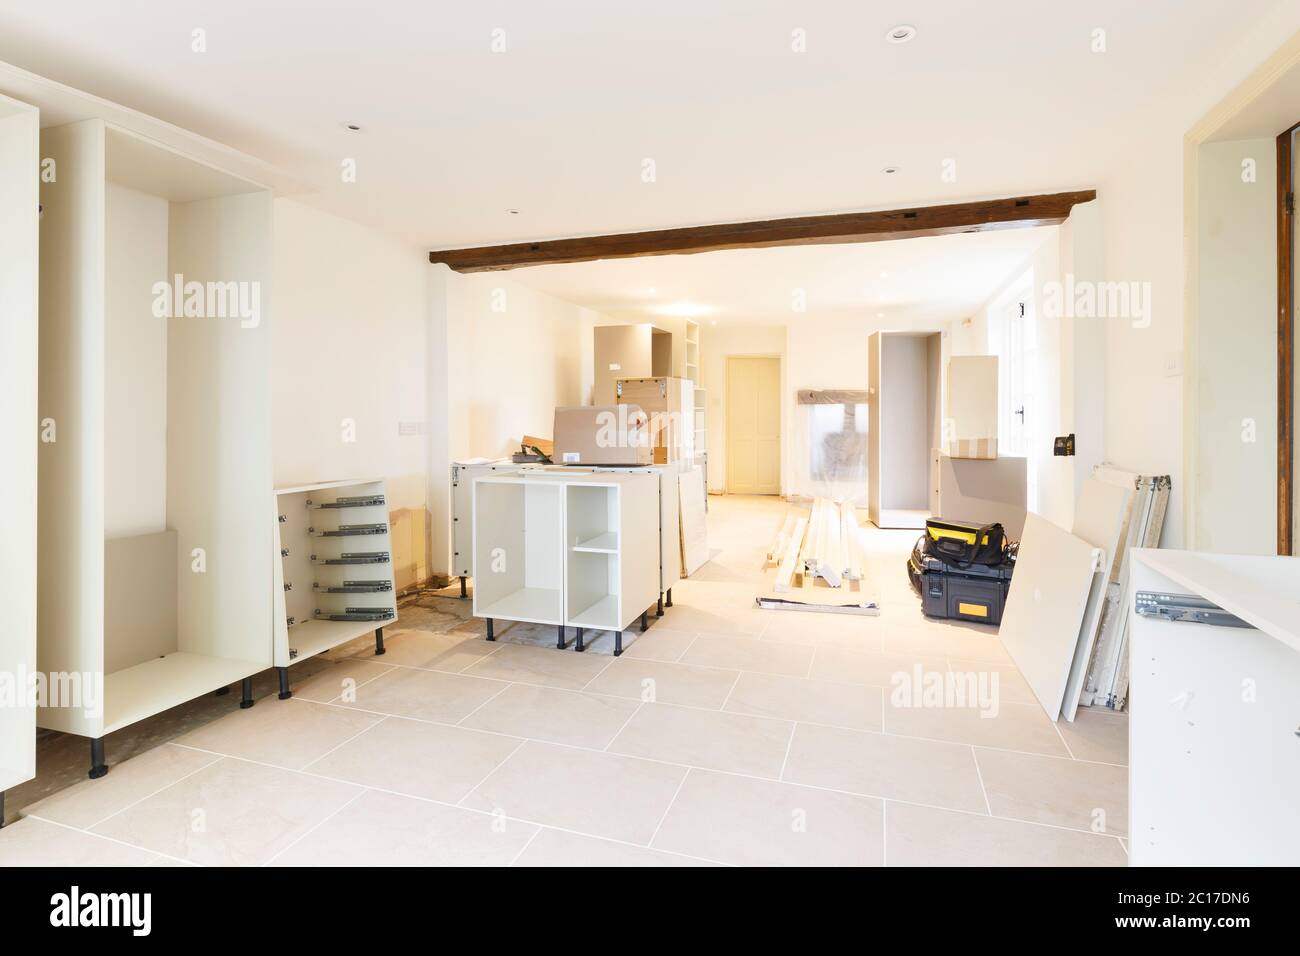 Projet d'amélioration de la maison, l'aménagement d'une nouvelle cuisine dans une maison de luxe britannique Banque D'Images